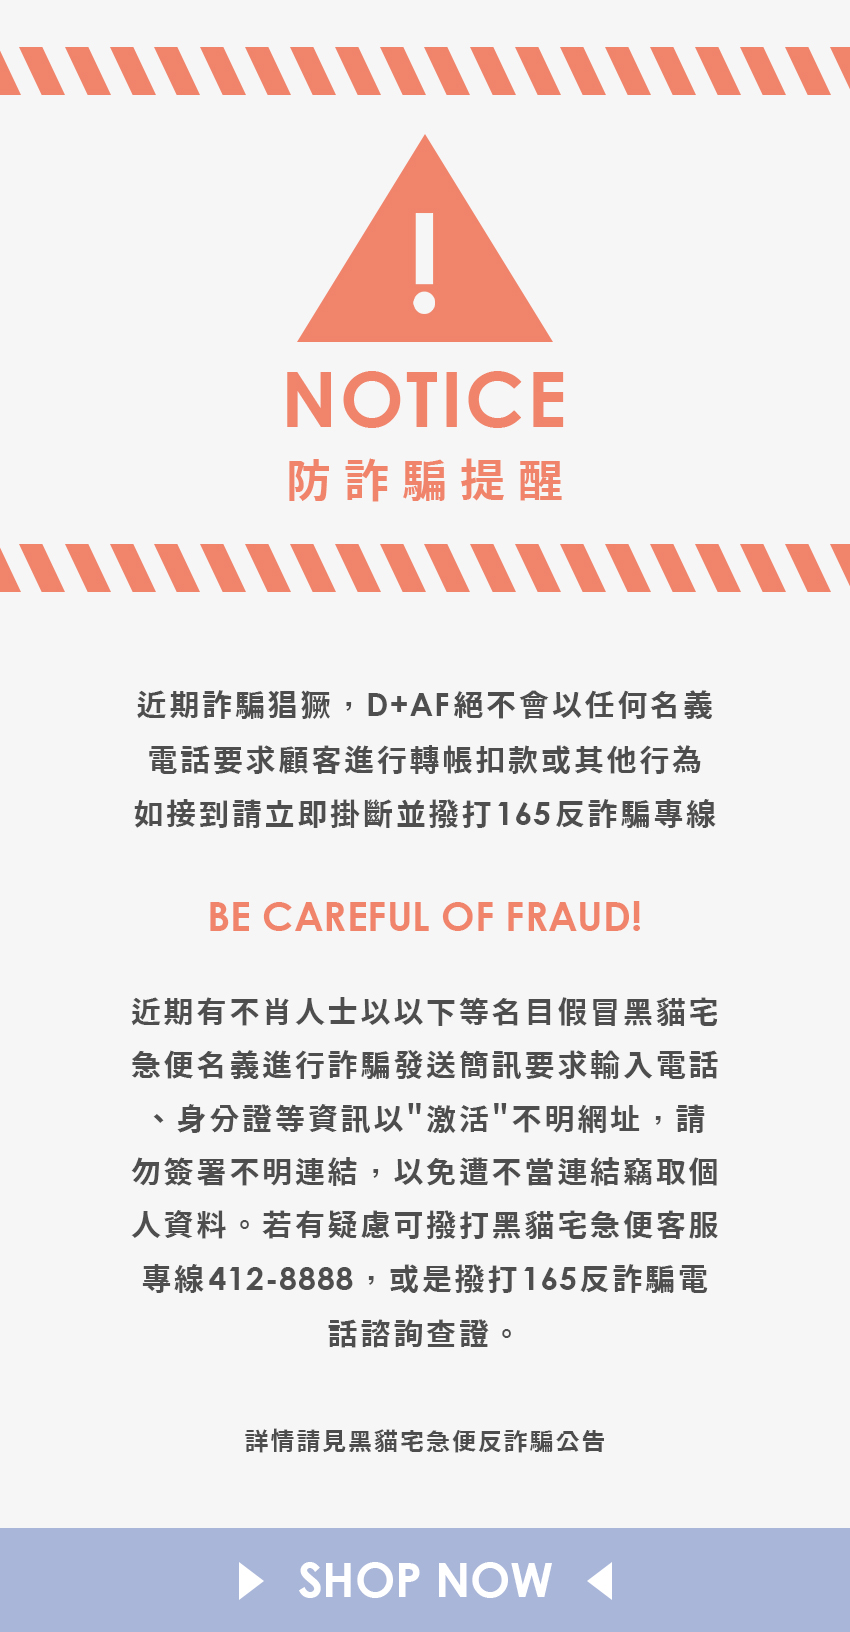 反詐騙公告- D+AF官方購物網站